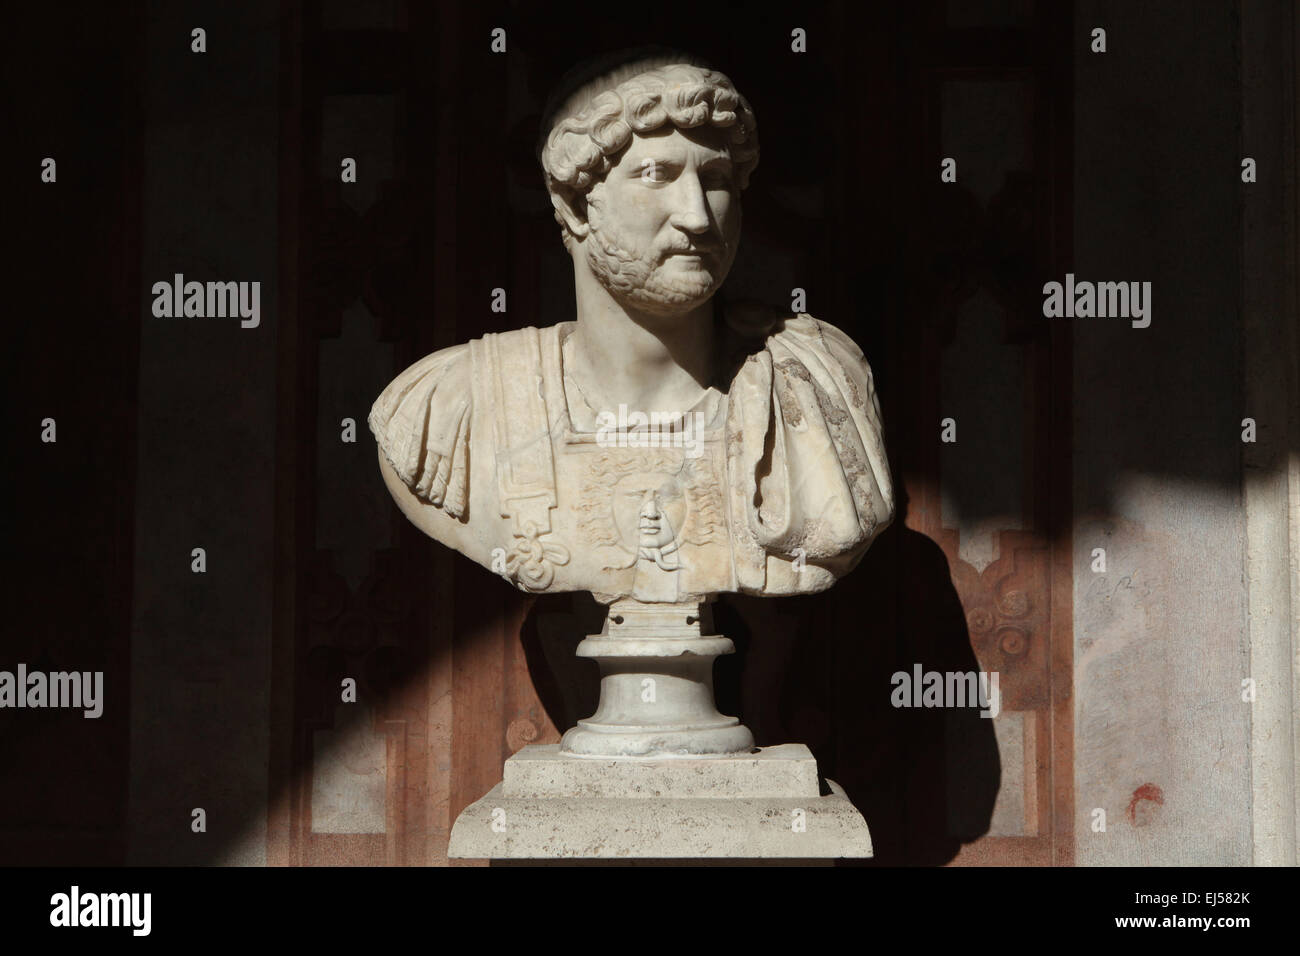 El emperador romano Adriano. Busto de mármol romano del siglo II D.C. Museo Nacional Romano, el Palazzo Altemps, Roma, Italia. Foto de stock